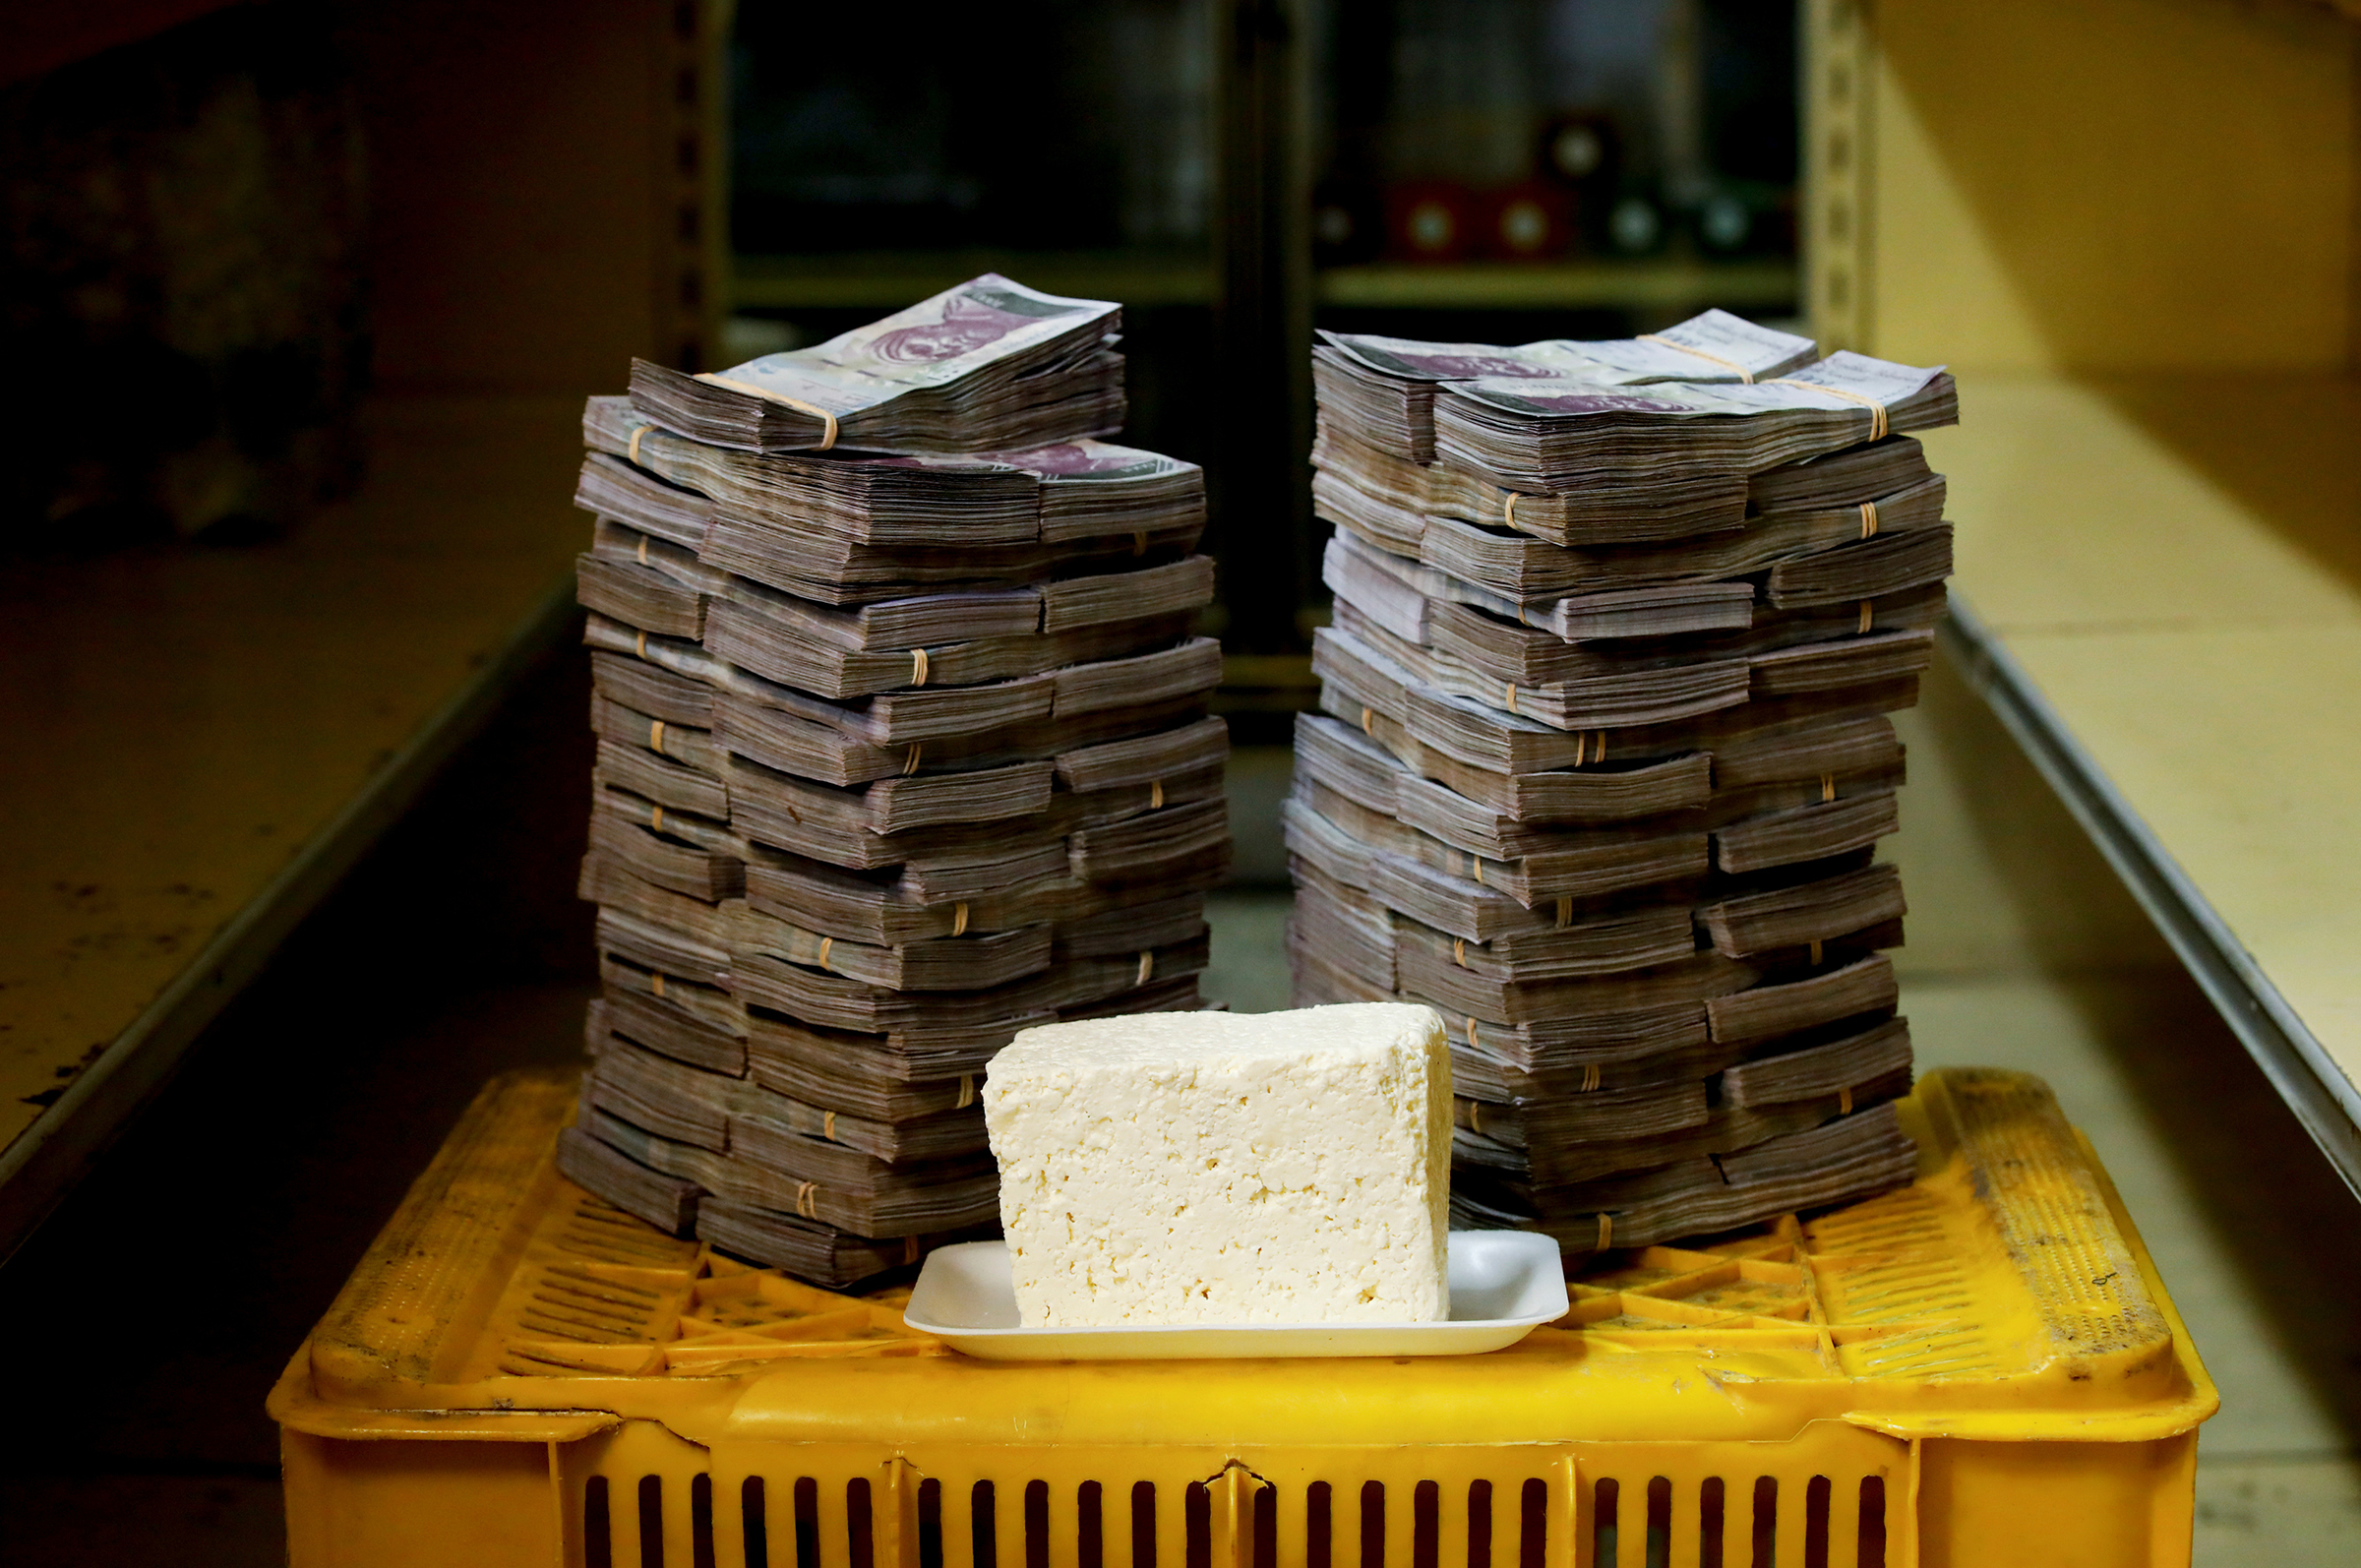 1 кг сыра обойдется в 7,5 млн боливаров, или $1,14
